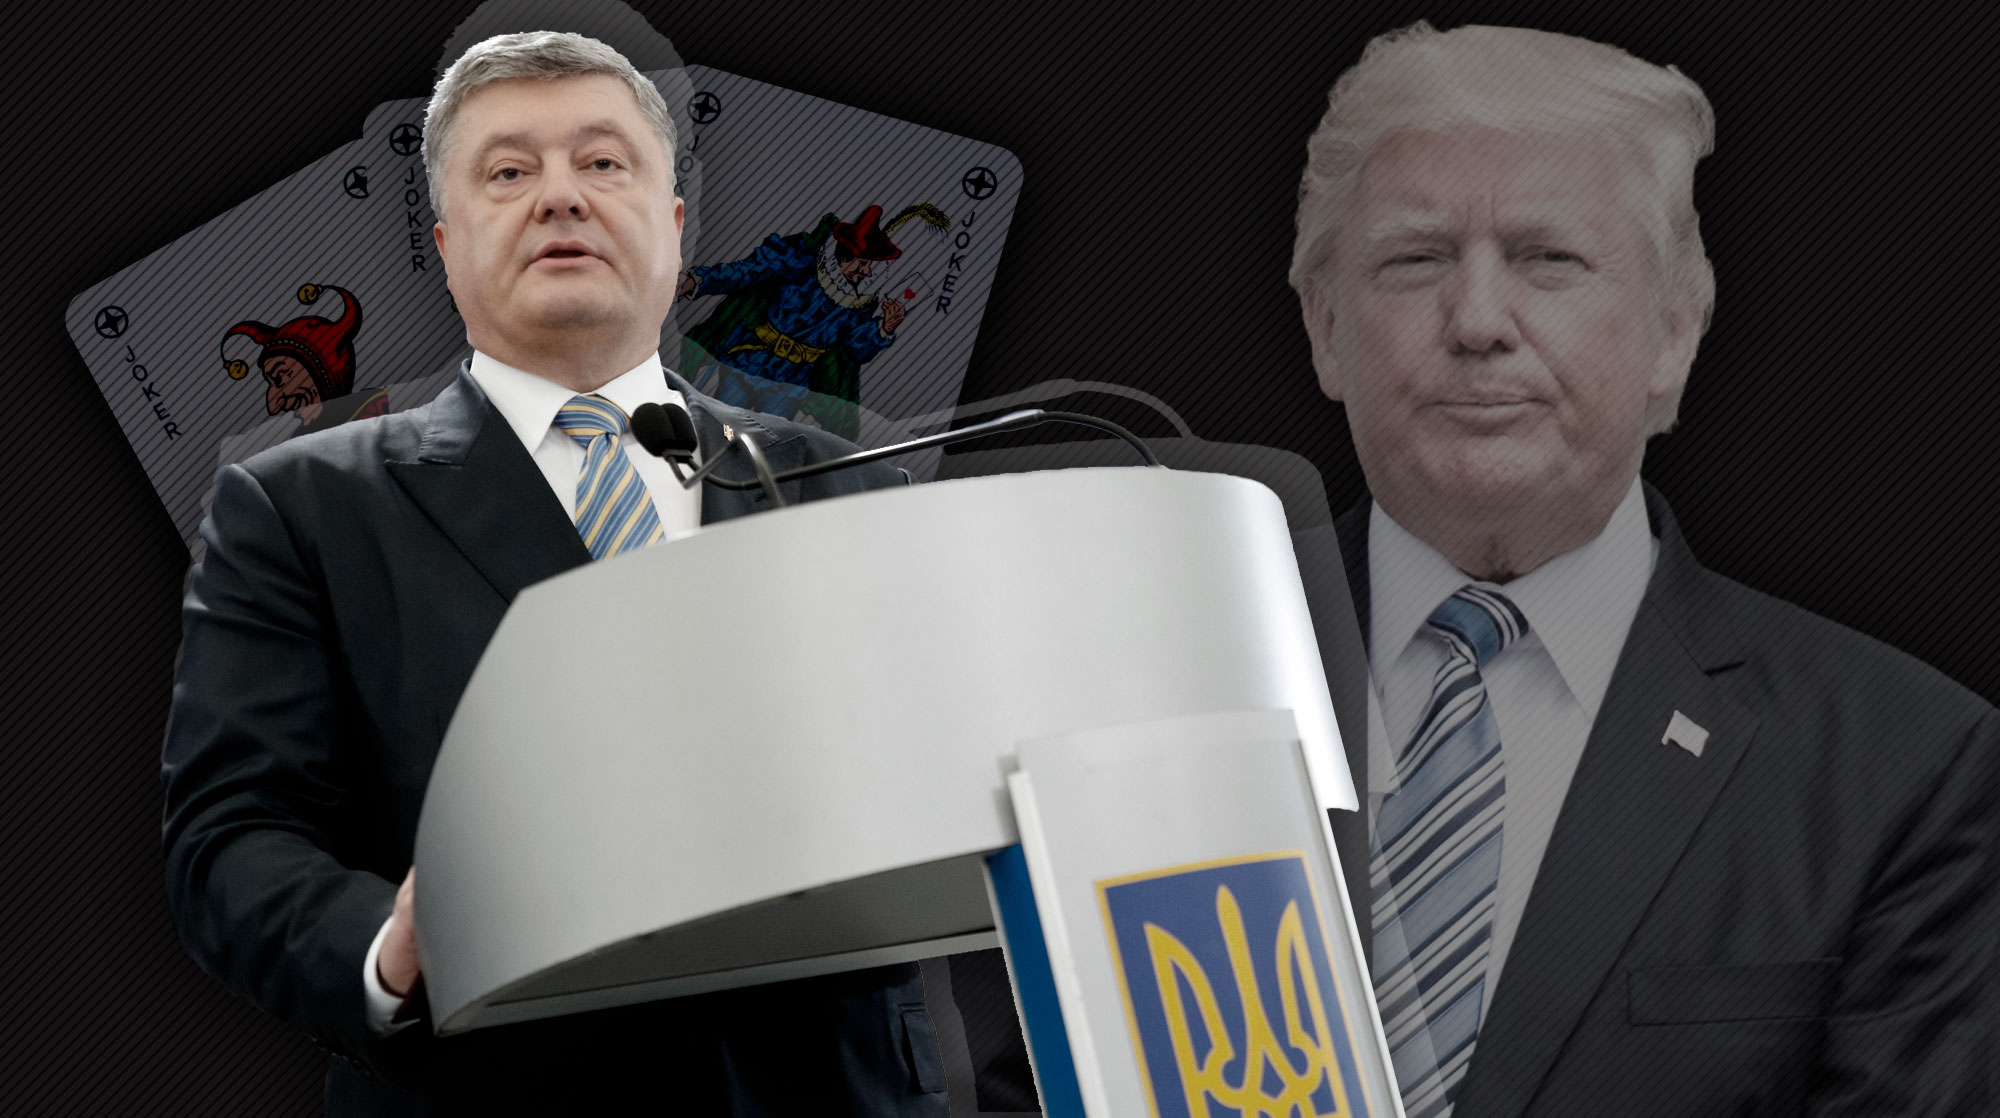 Диалог президентов США и Украины состоится накануне саммита G20 и возможной встречи с Владимиром Путиным undefined